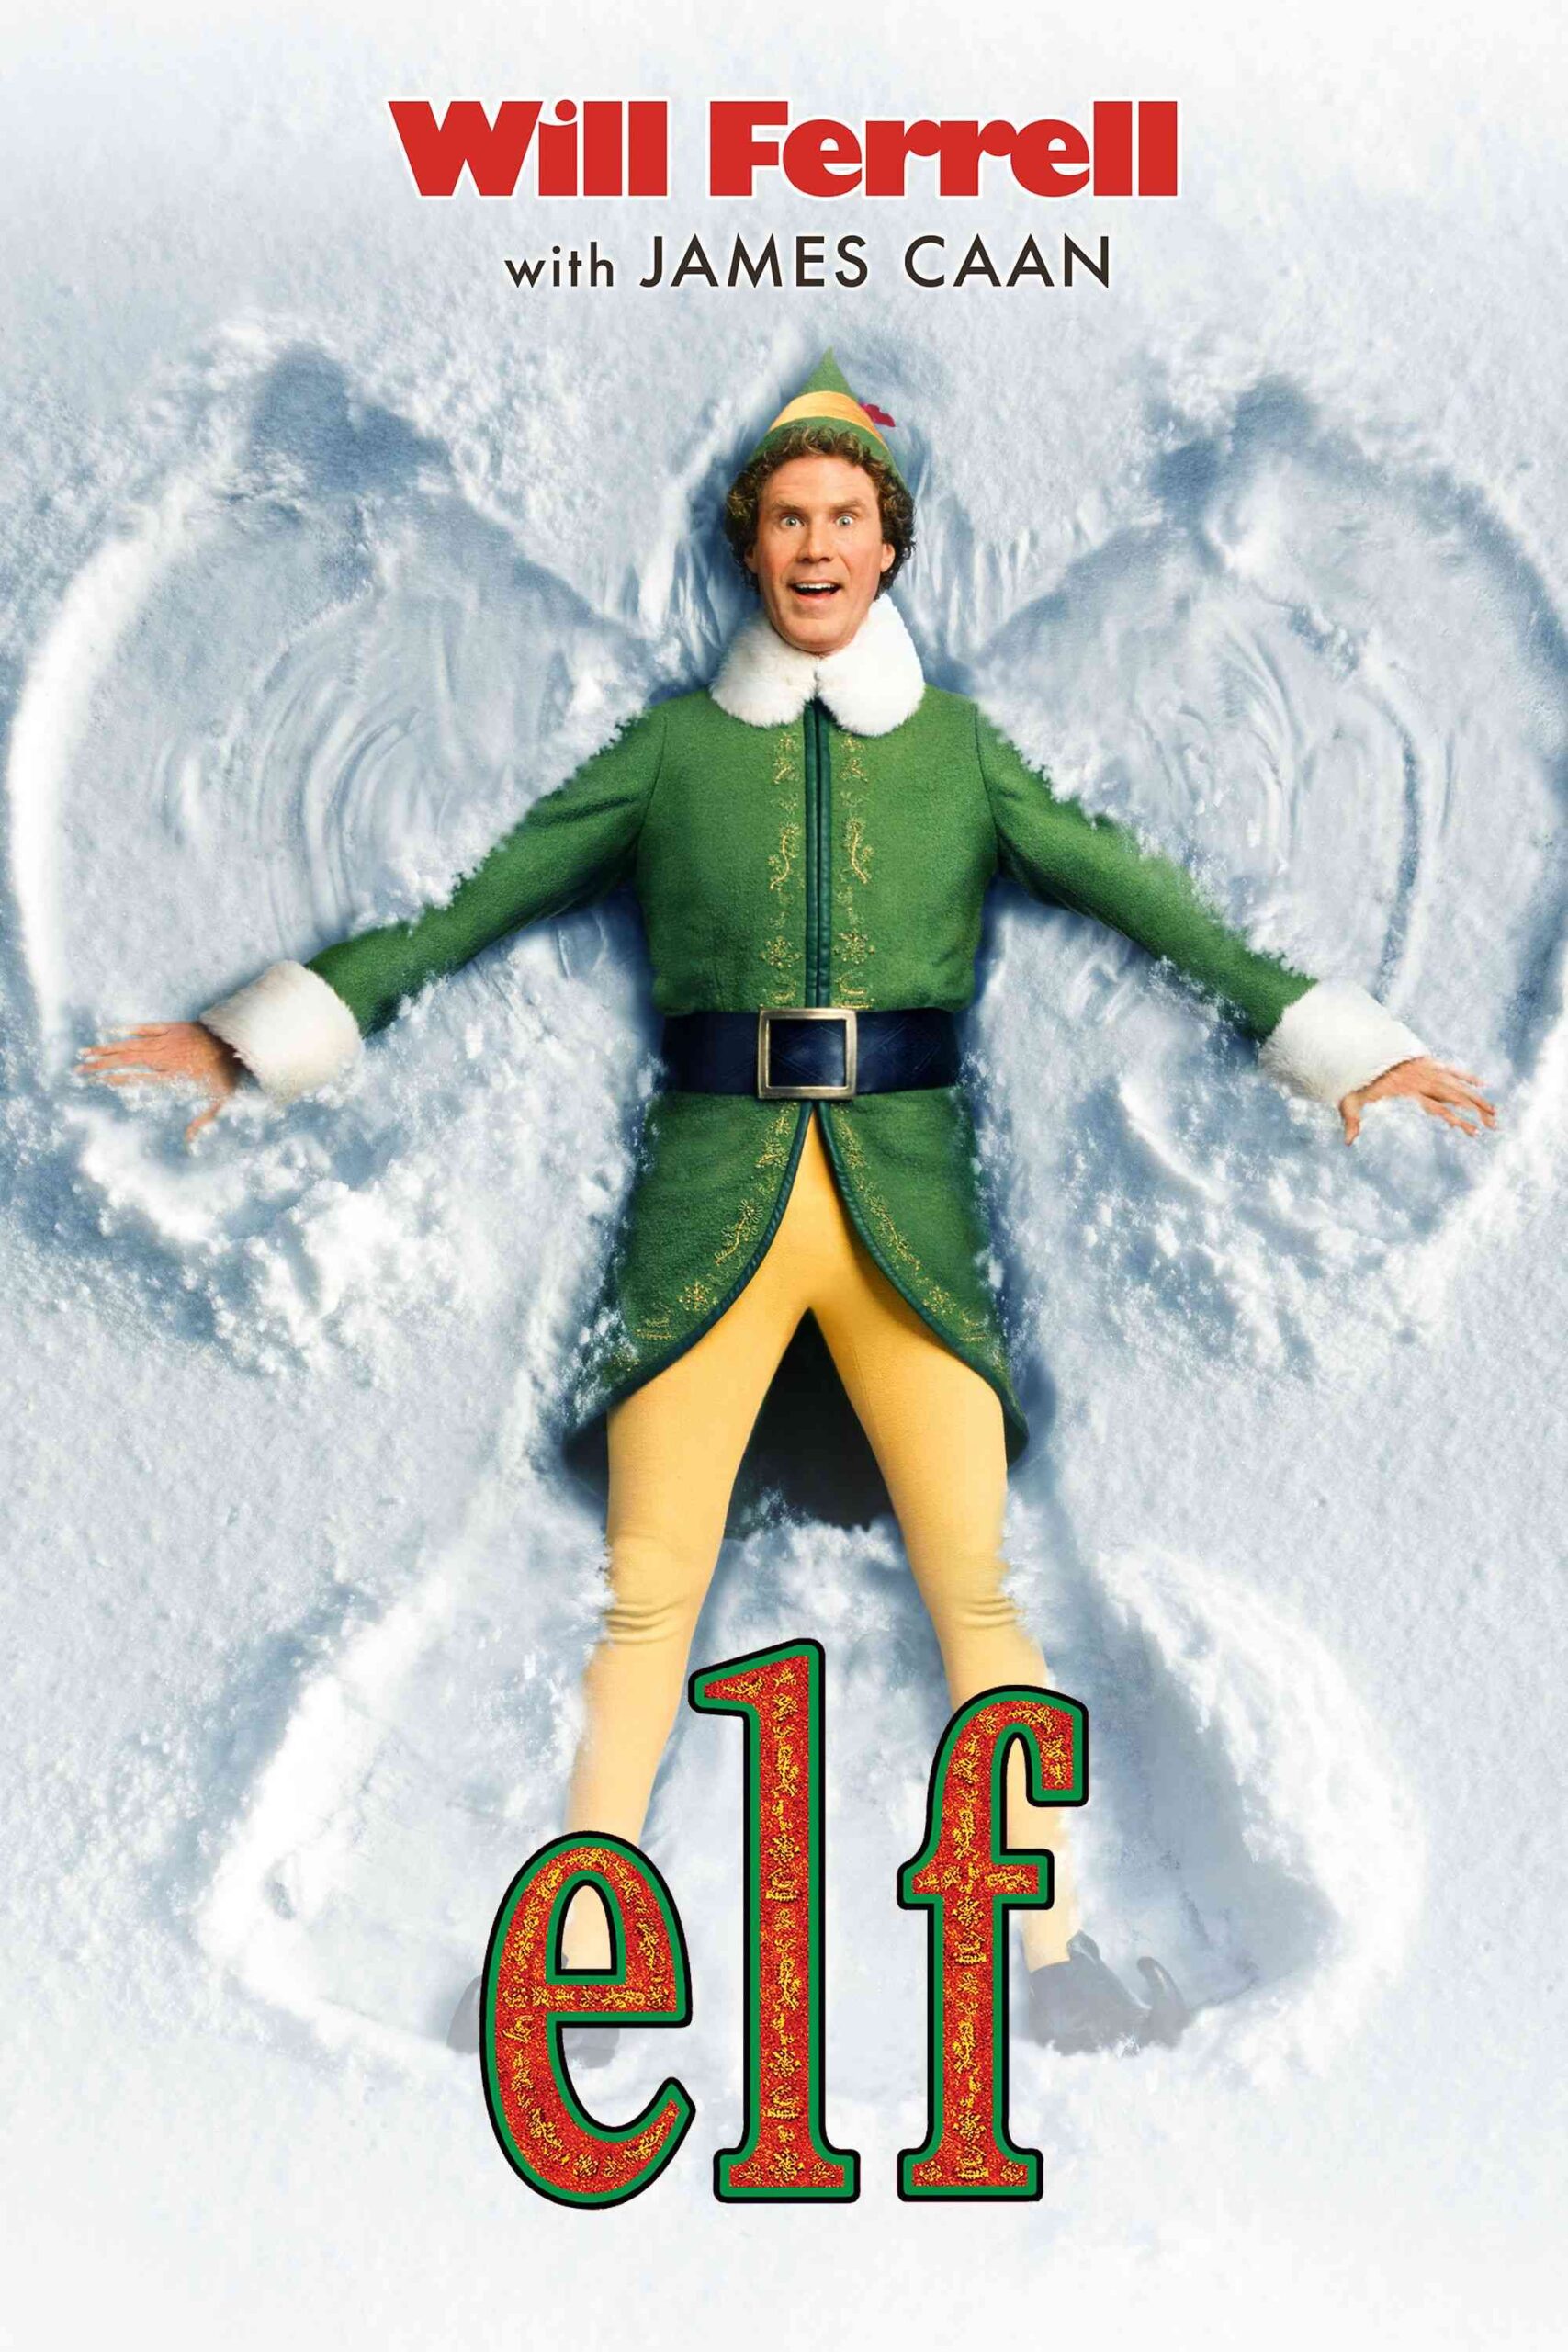 FULL MOVIE: Elf (2003)